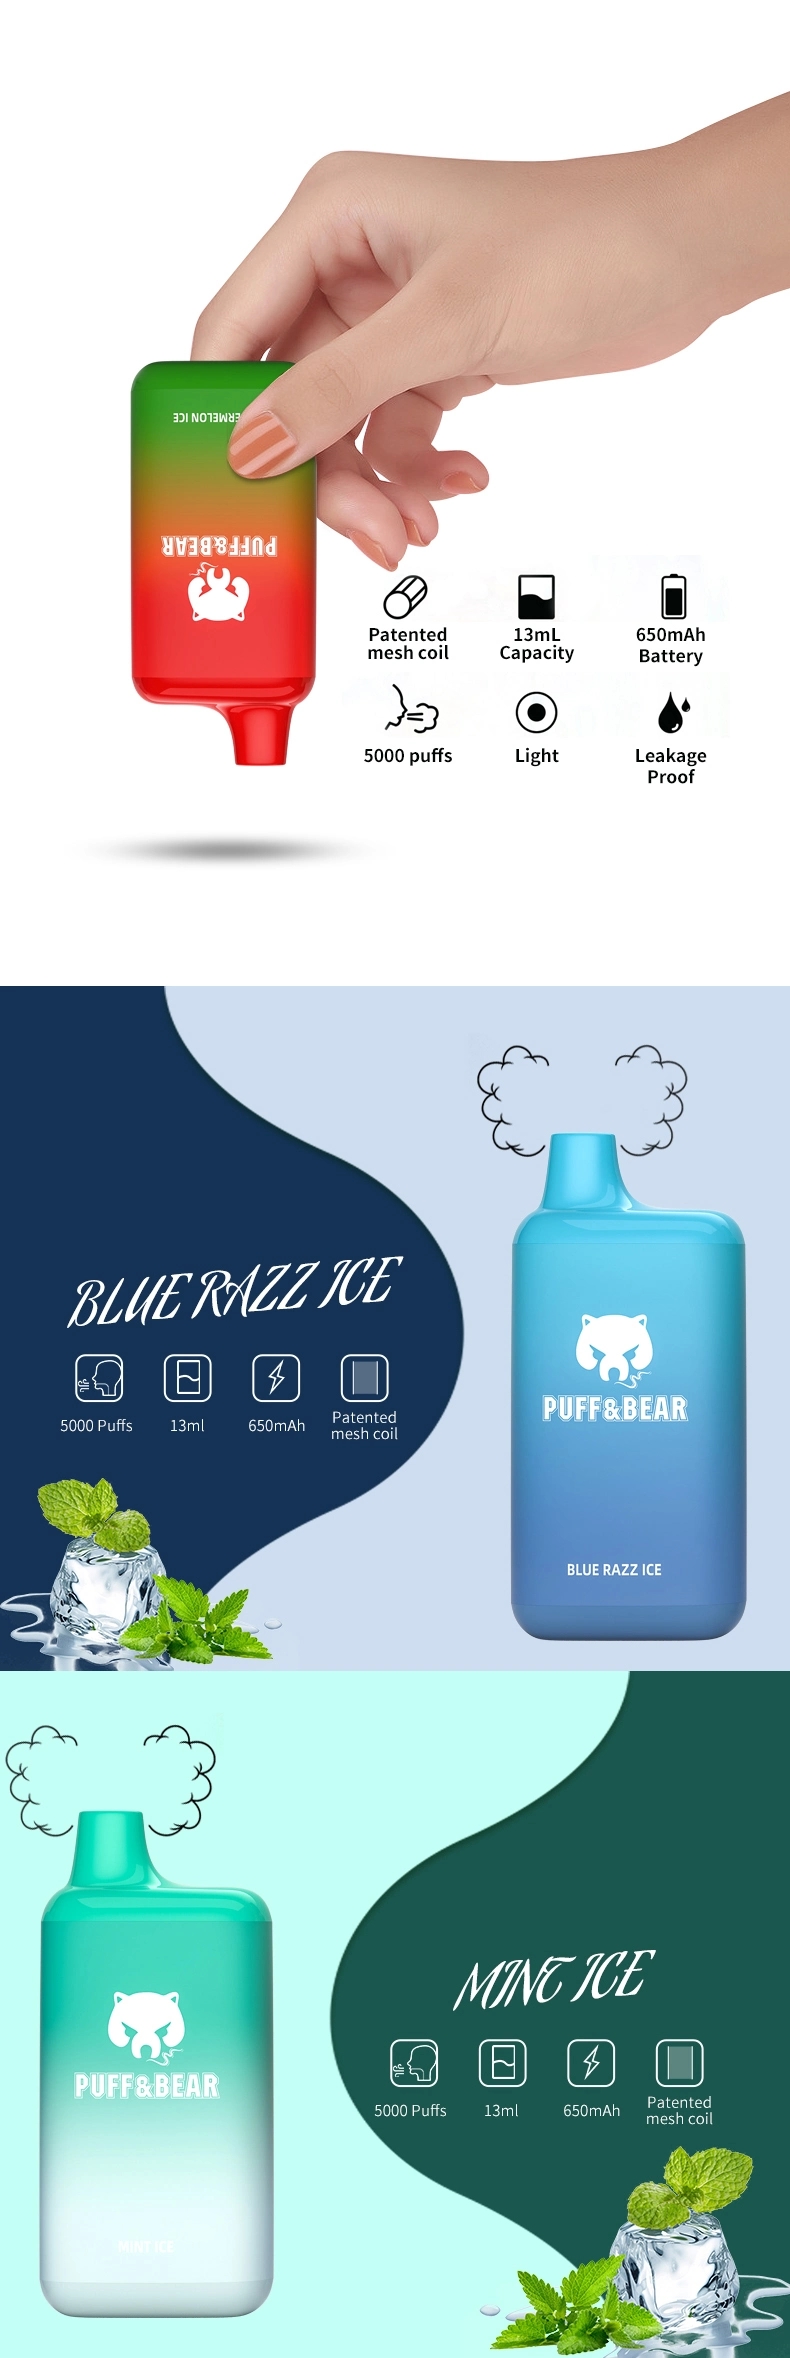 China-Shenzhen-Vape-E-Cigarette-Puffandbear-ថ្មី-Vaporizer-Pen-Puff-Bar-5000-Puffs-Fruit-Juice-Flavor-Disposable-Vape.webp (9)